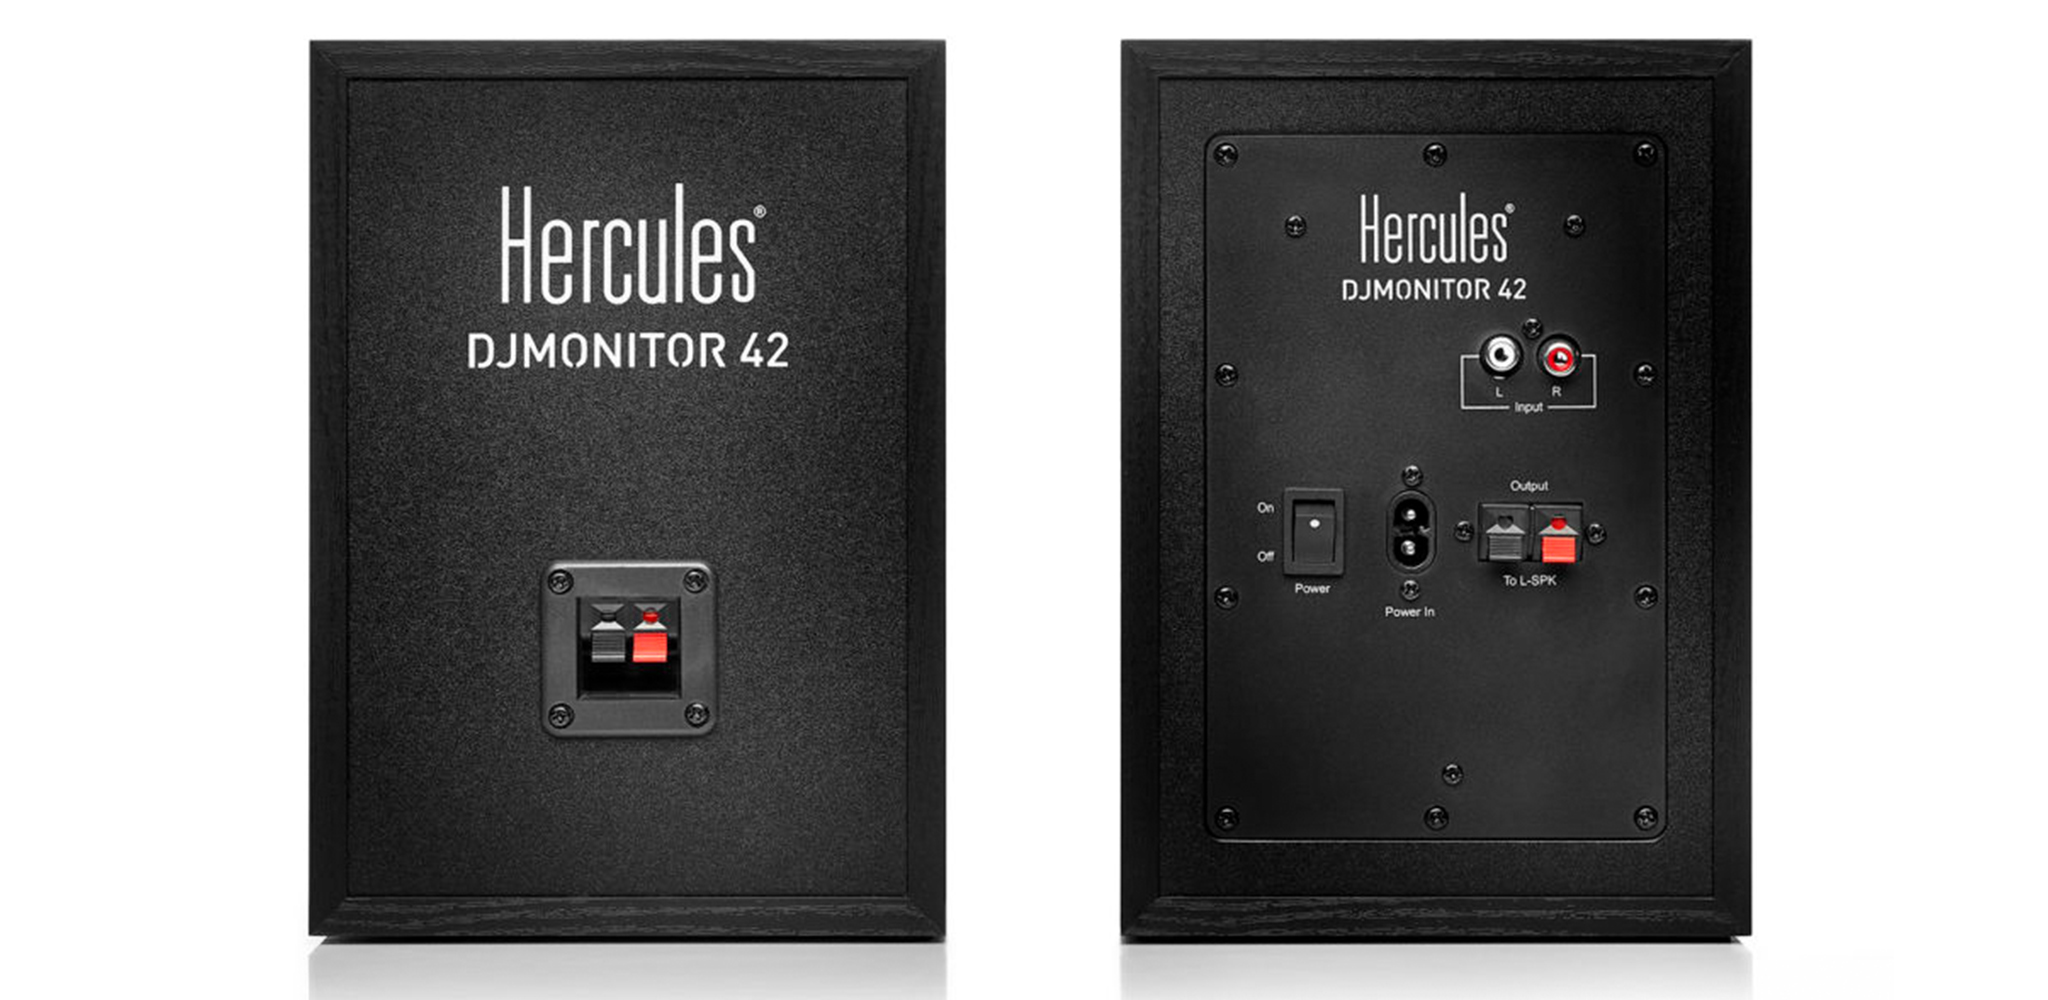 Hercules DJ monitor 42